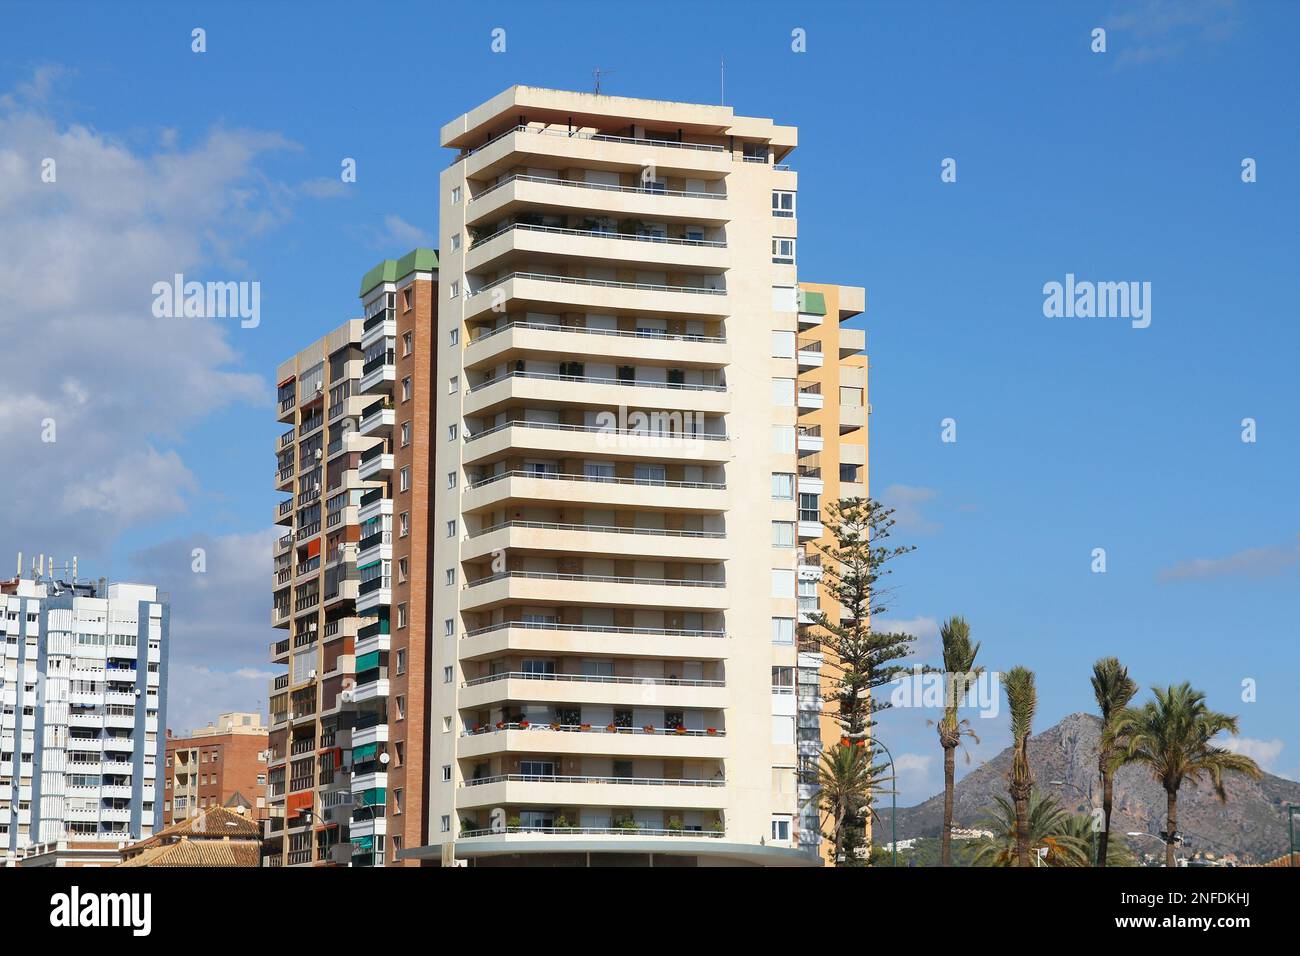 Allgemeine Hochhausarchitektur in Malaga, Spanien. Stockfoto